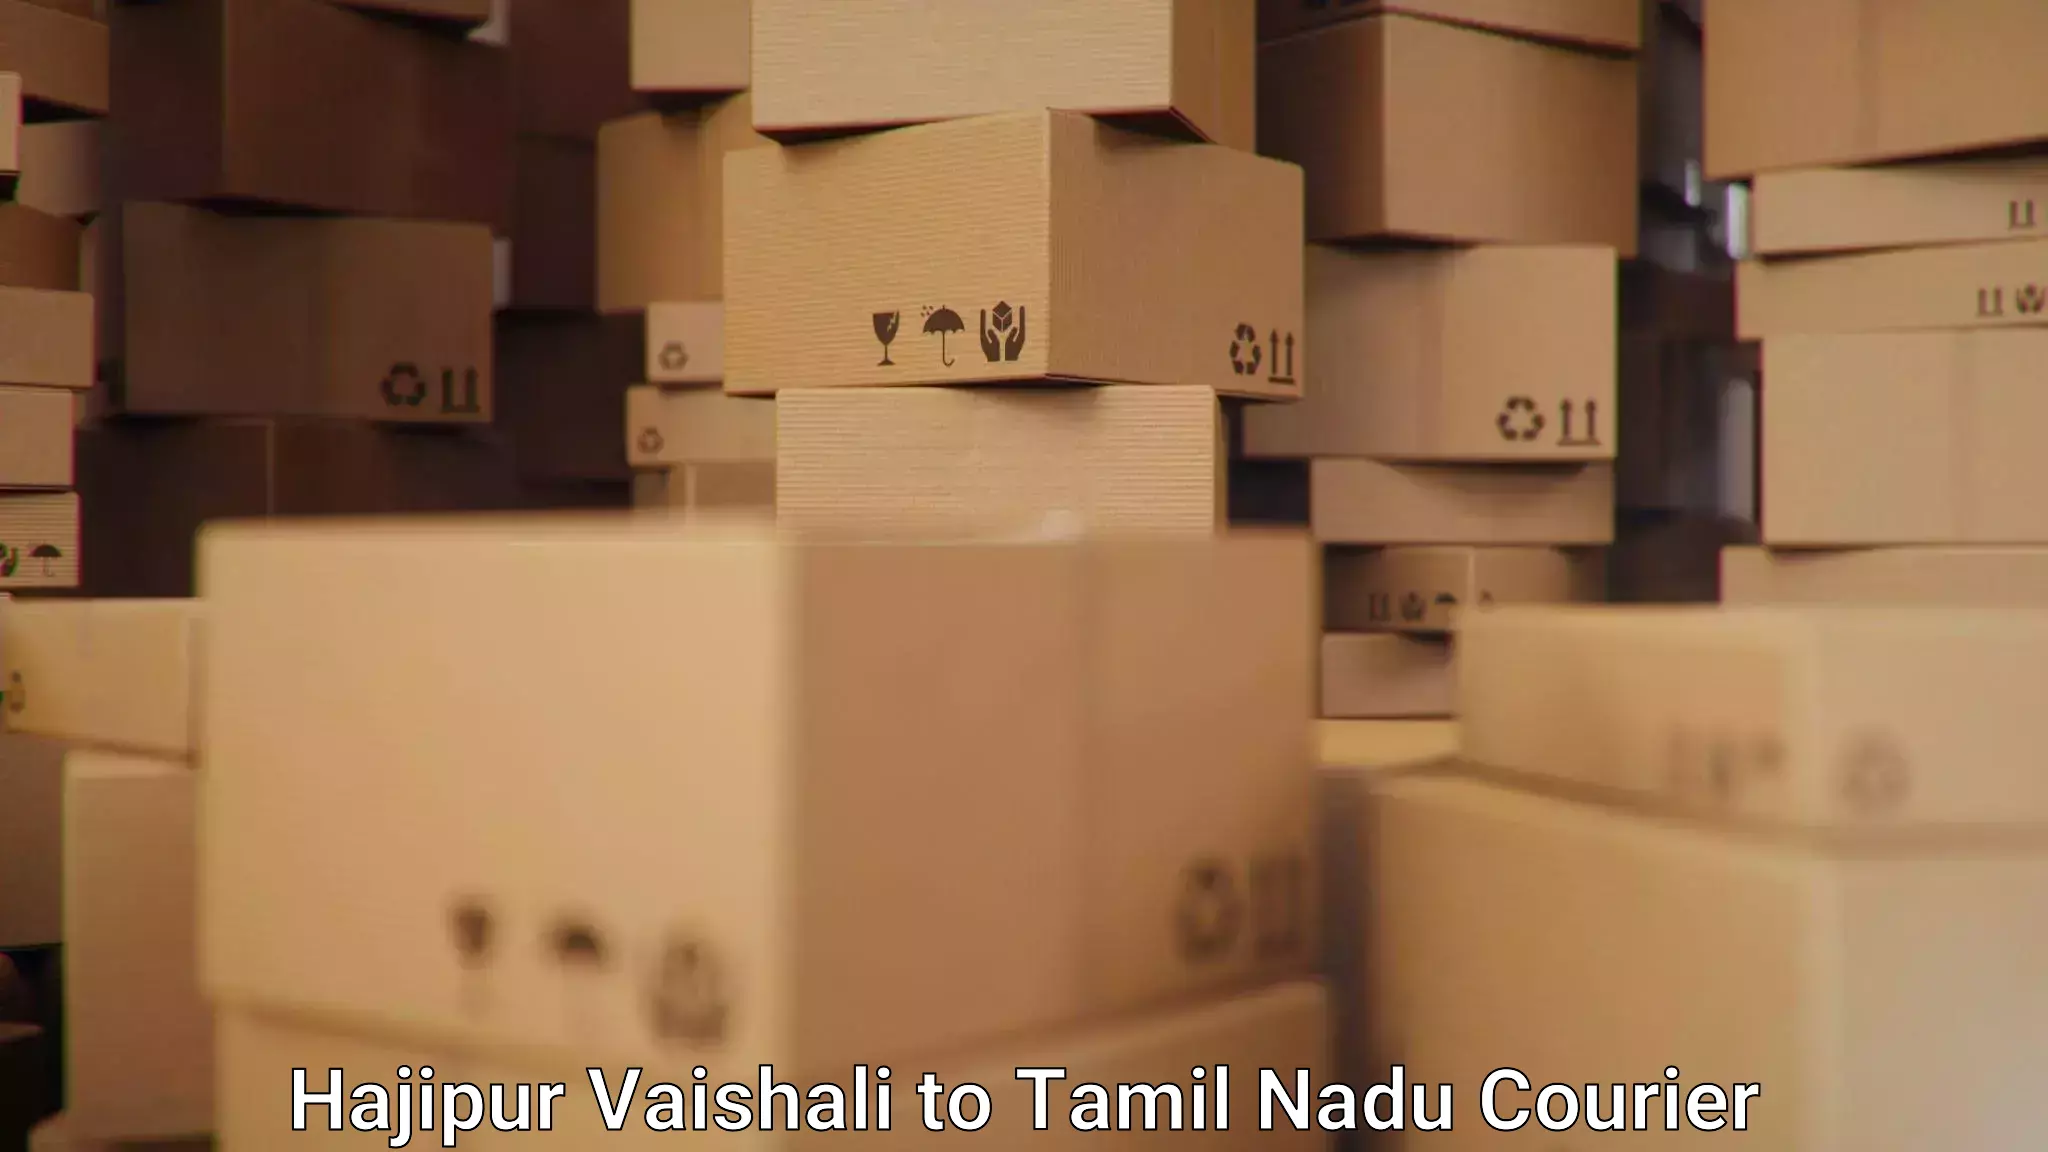 Customizable shipping options Hajipur Vaishali to Thiruporur